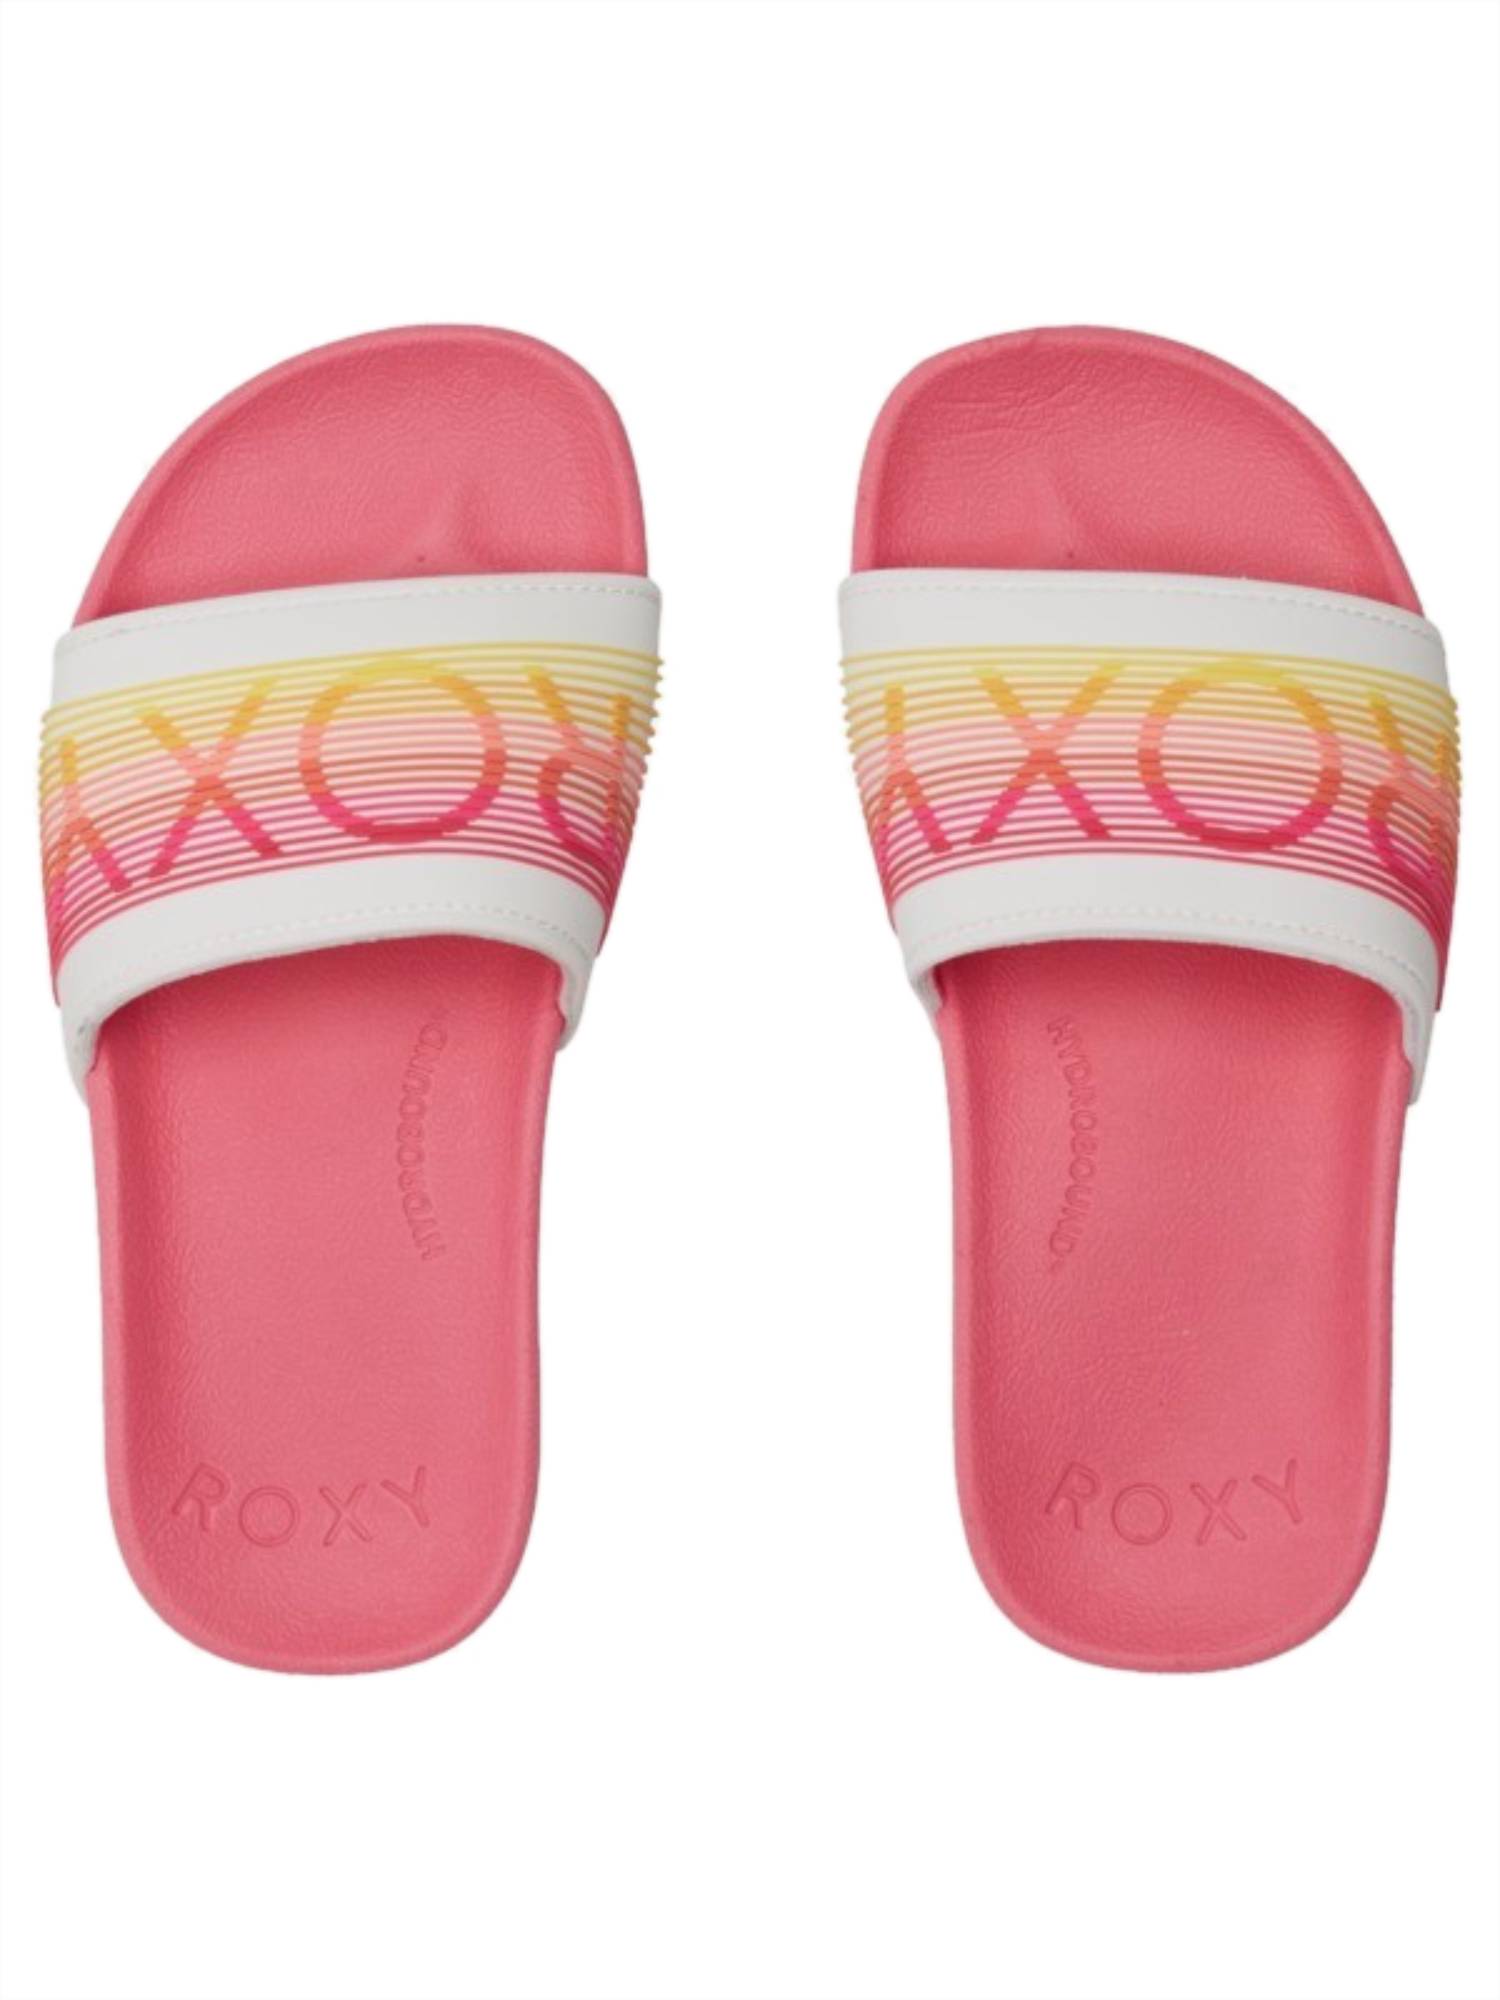 Roxy Slippy LX Girls Sandal PN1-Pink 1 12 C